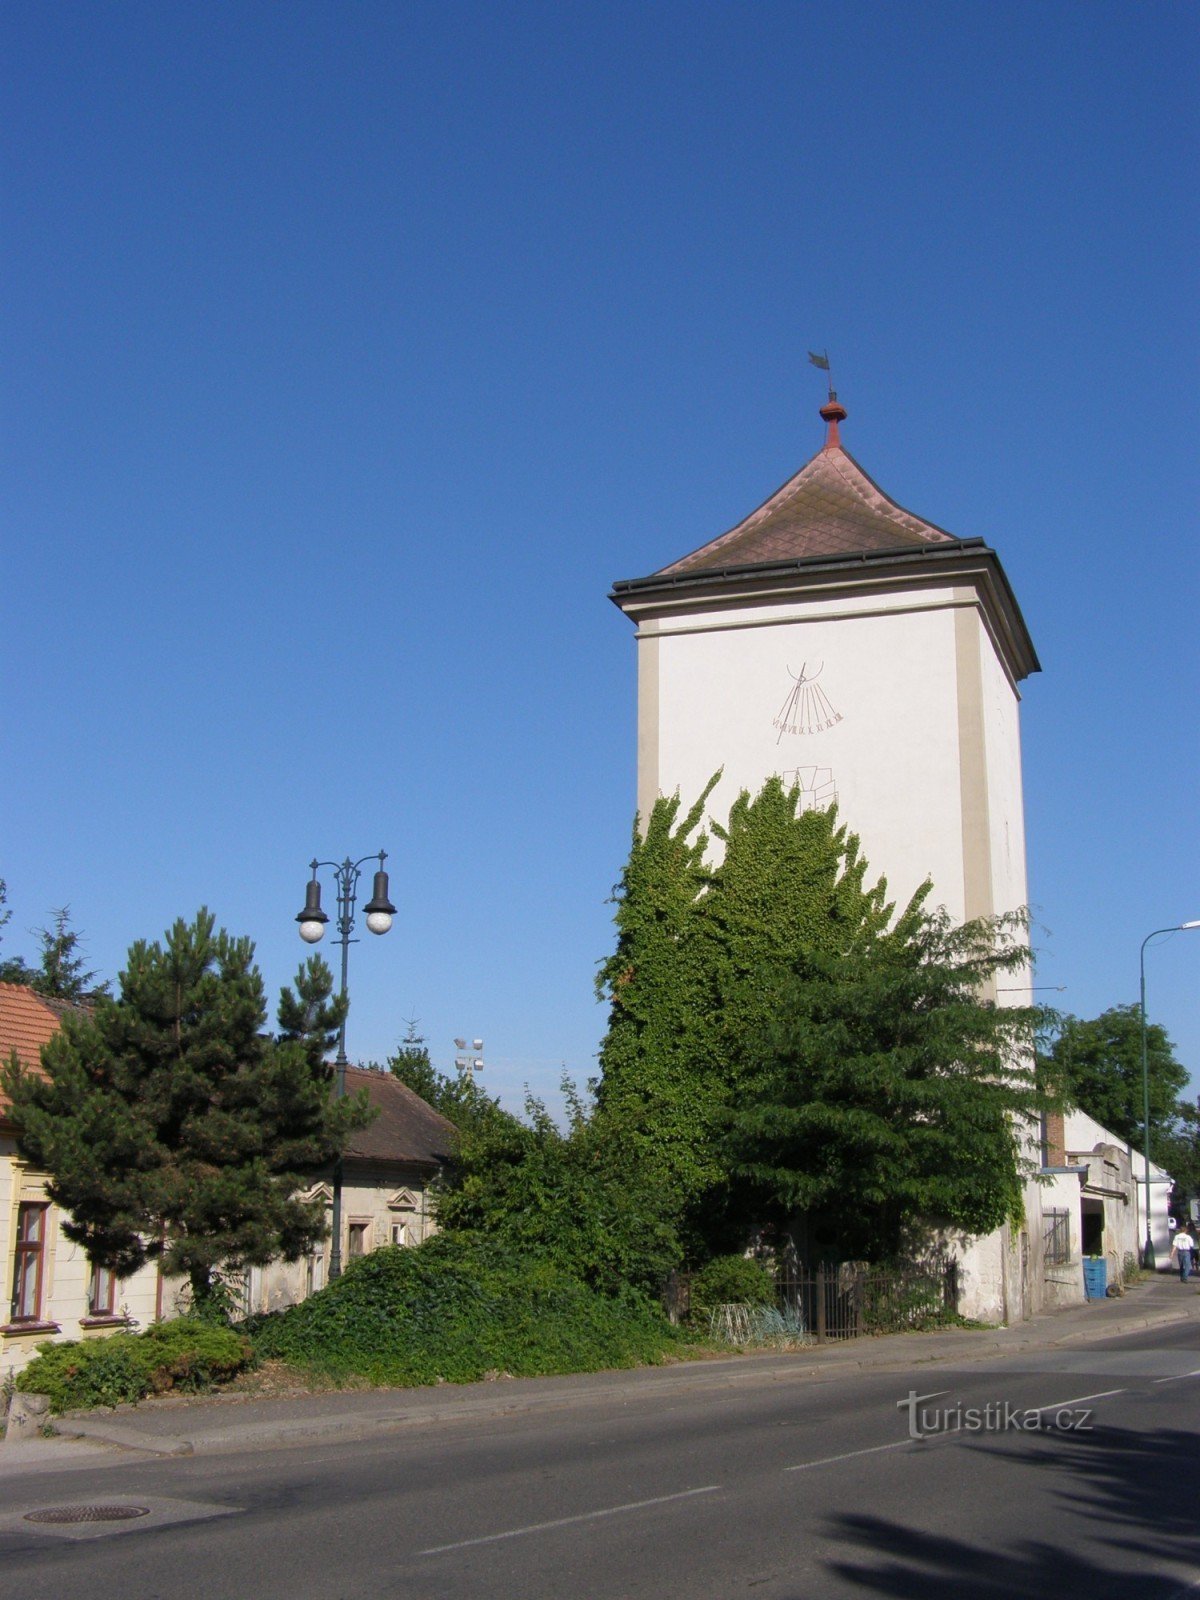 Jičín - torre de água, Galerie Na hrázi